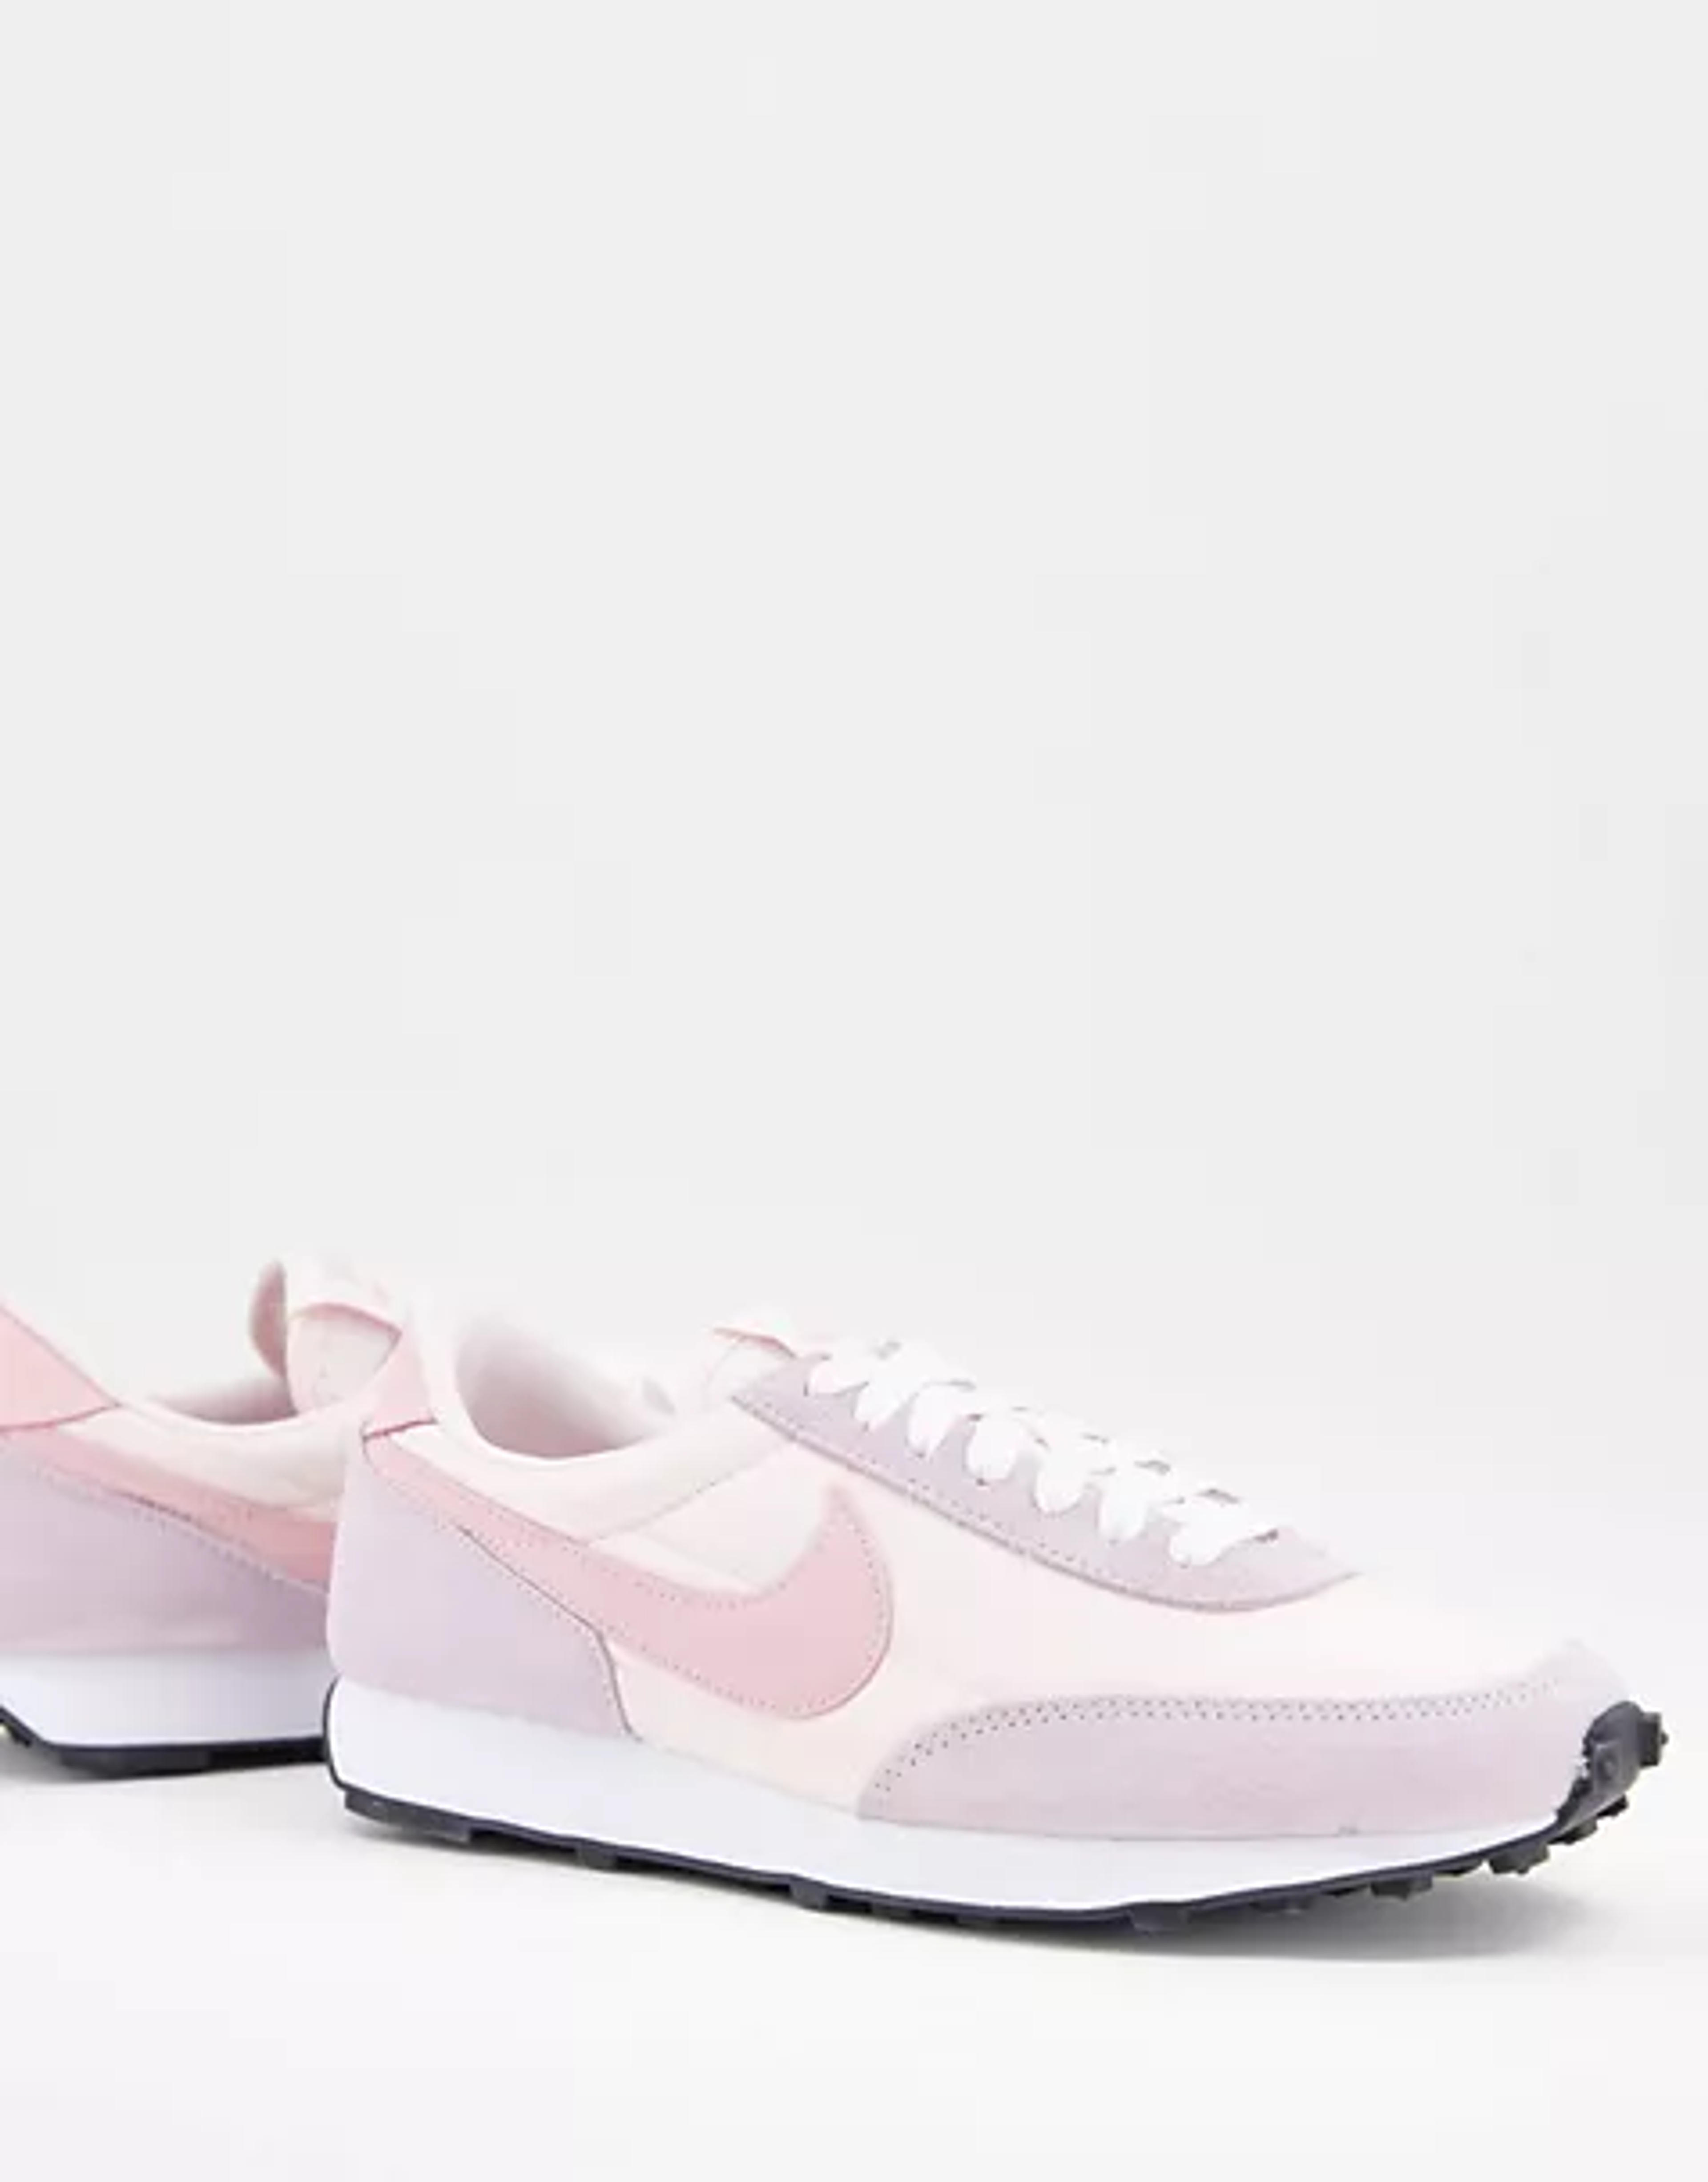 Nike Daybreak sneakers in pink and purple pastel | ASOS